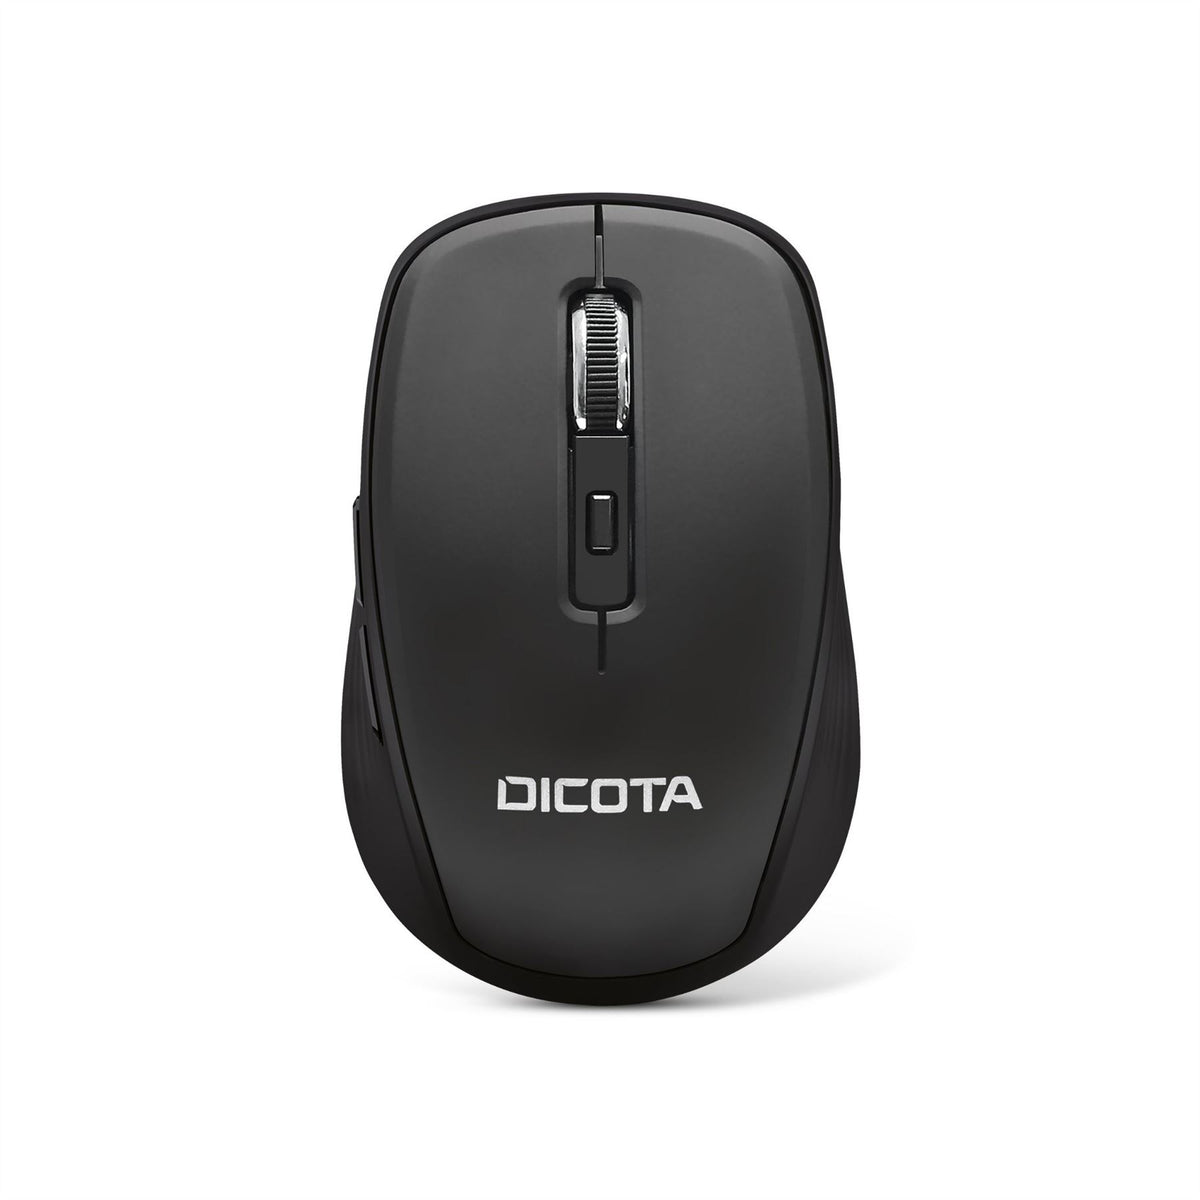 DICOTA D31980 Bluetooth mouse - 1,600 DPI